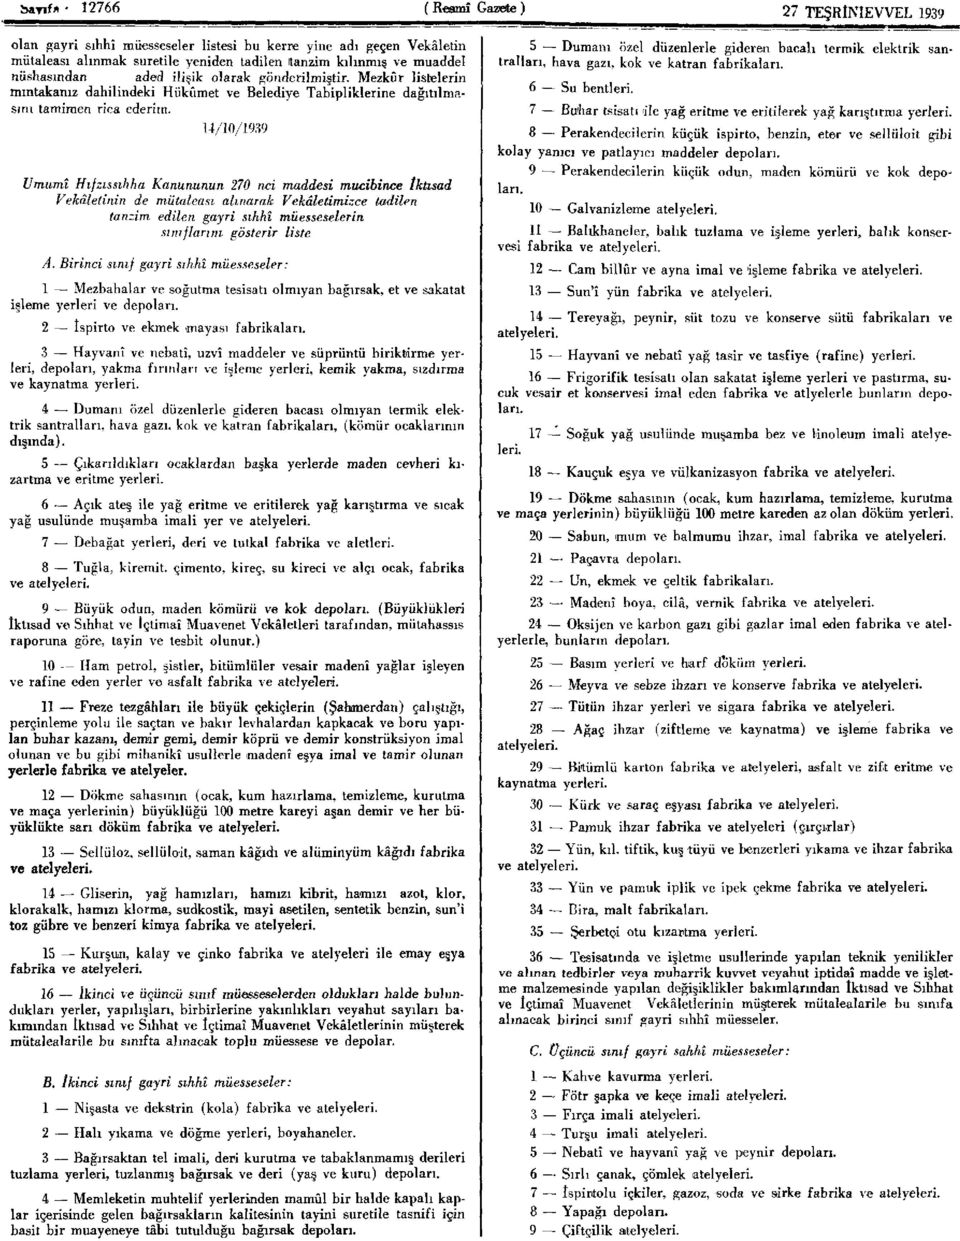 14/10/1939 Umumî Hıfzıssıhha Kanununun 270 nci maddesi mucibince tktısad Vekâletinin de mütaleası alınarak Vekâletimizce tadilen tanzim edilen gayri sıhhî müesseselerin sınıflarını gösterir liste A.